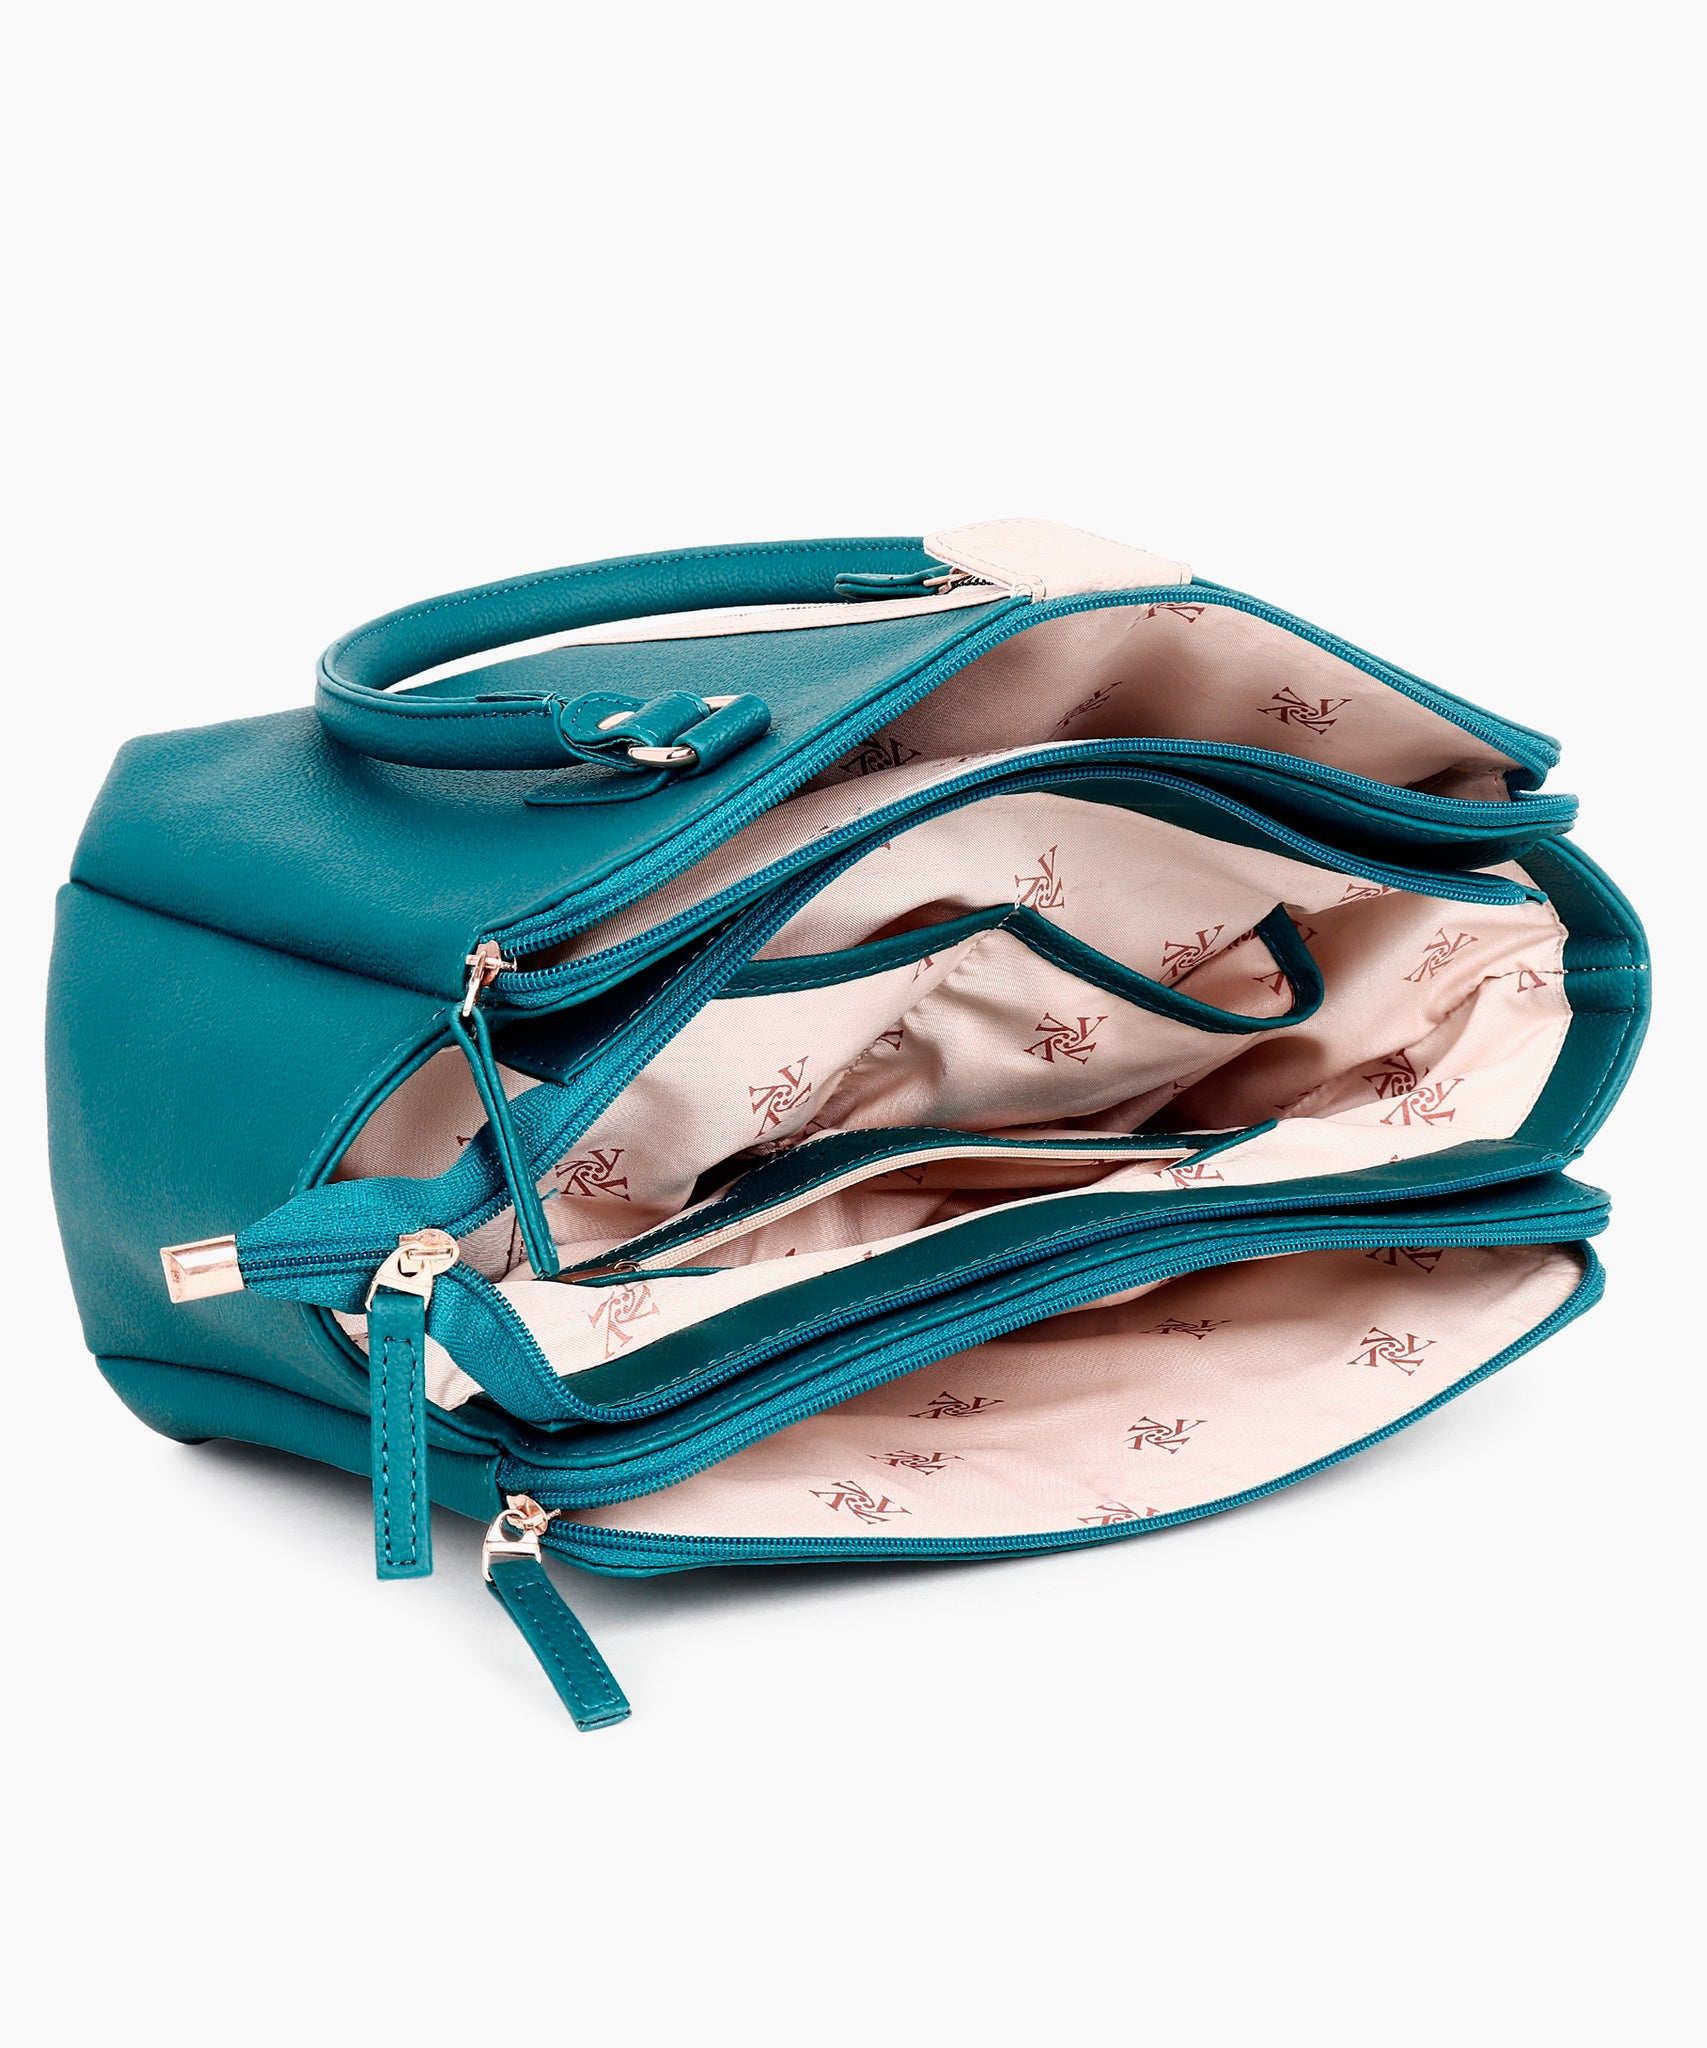 Multi Compartment trendy Handbag Turquiose